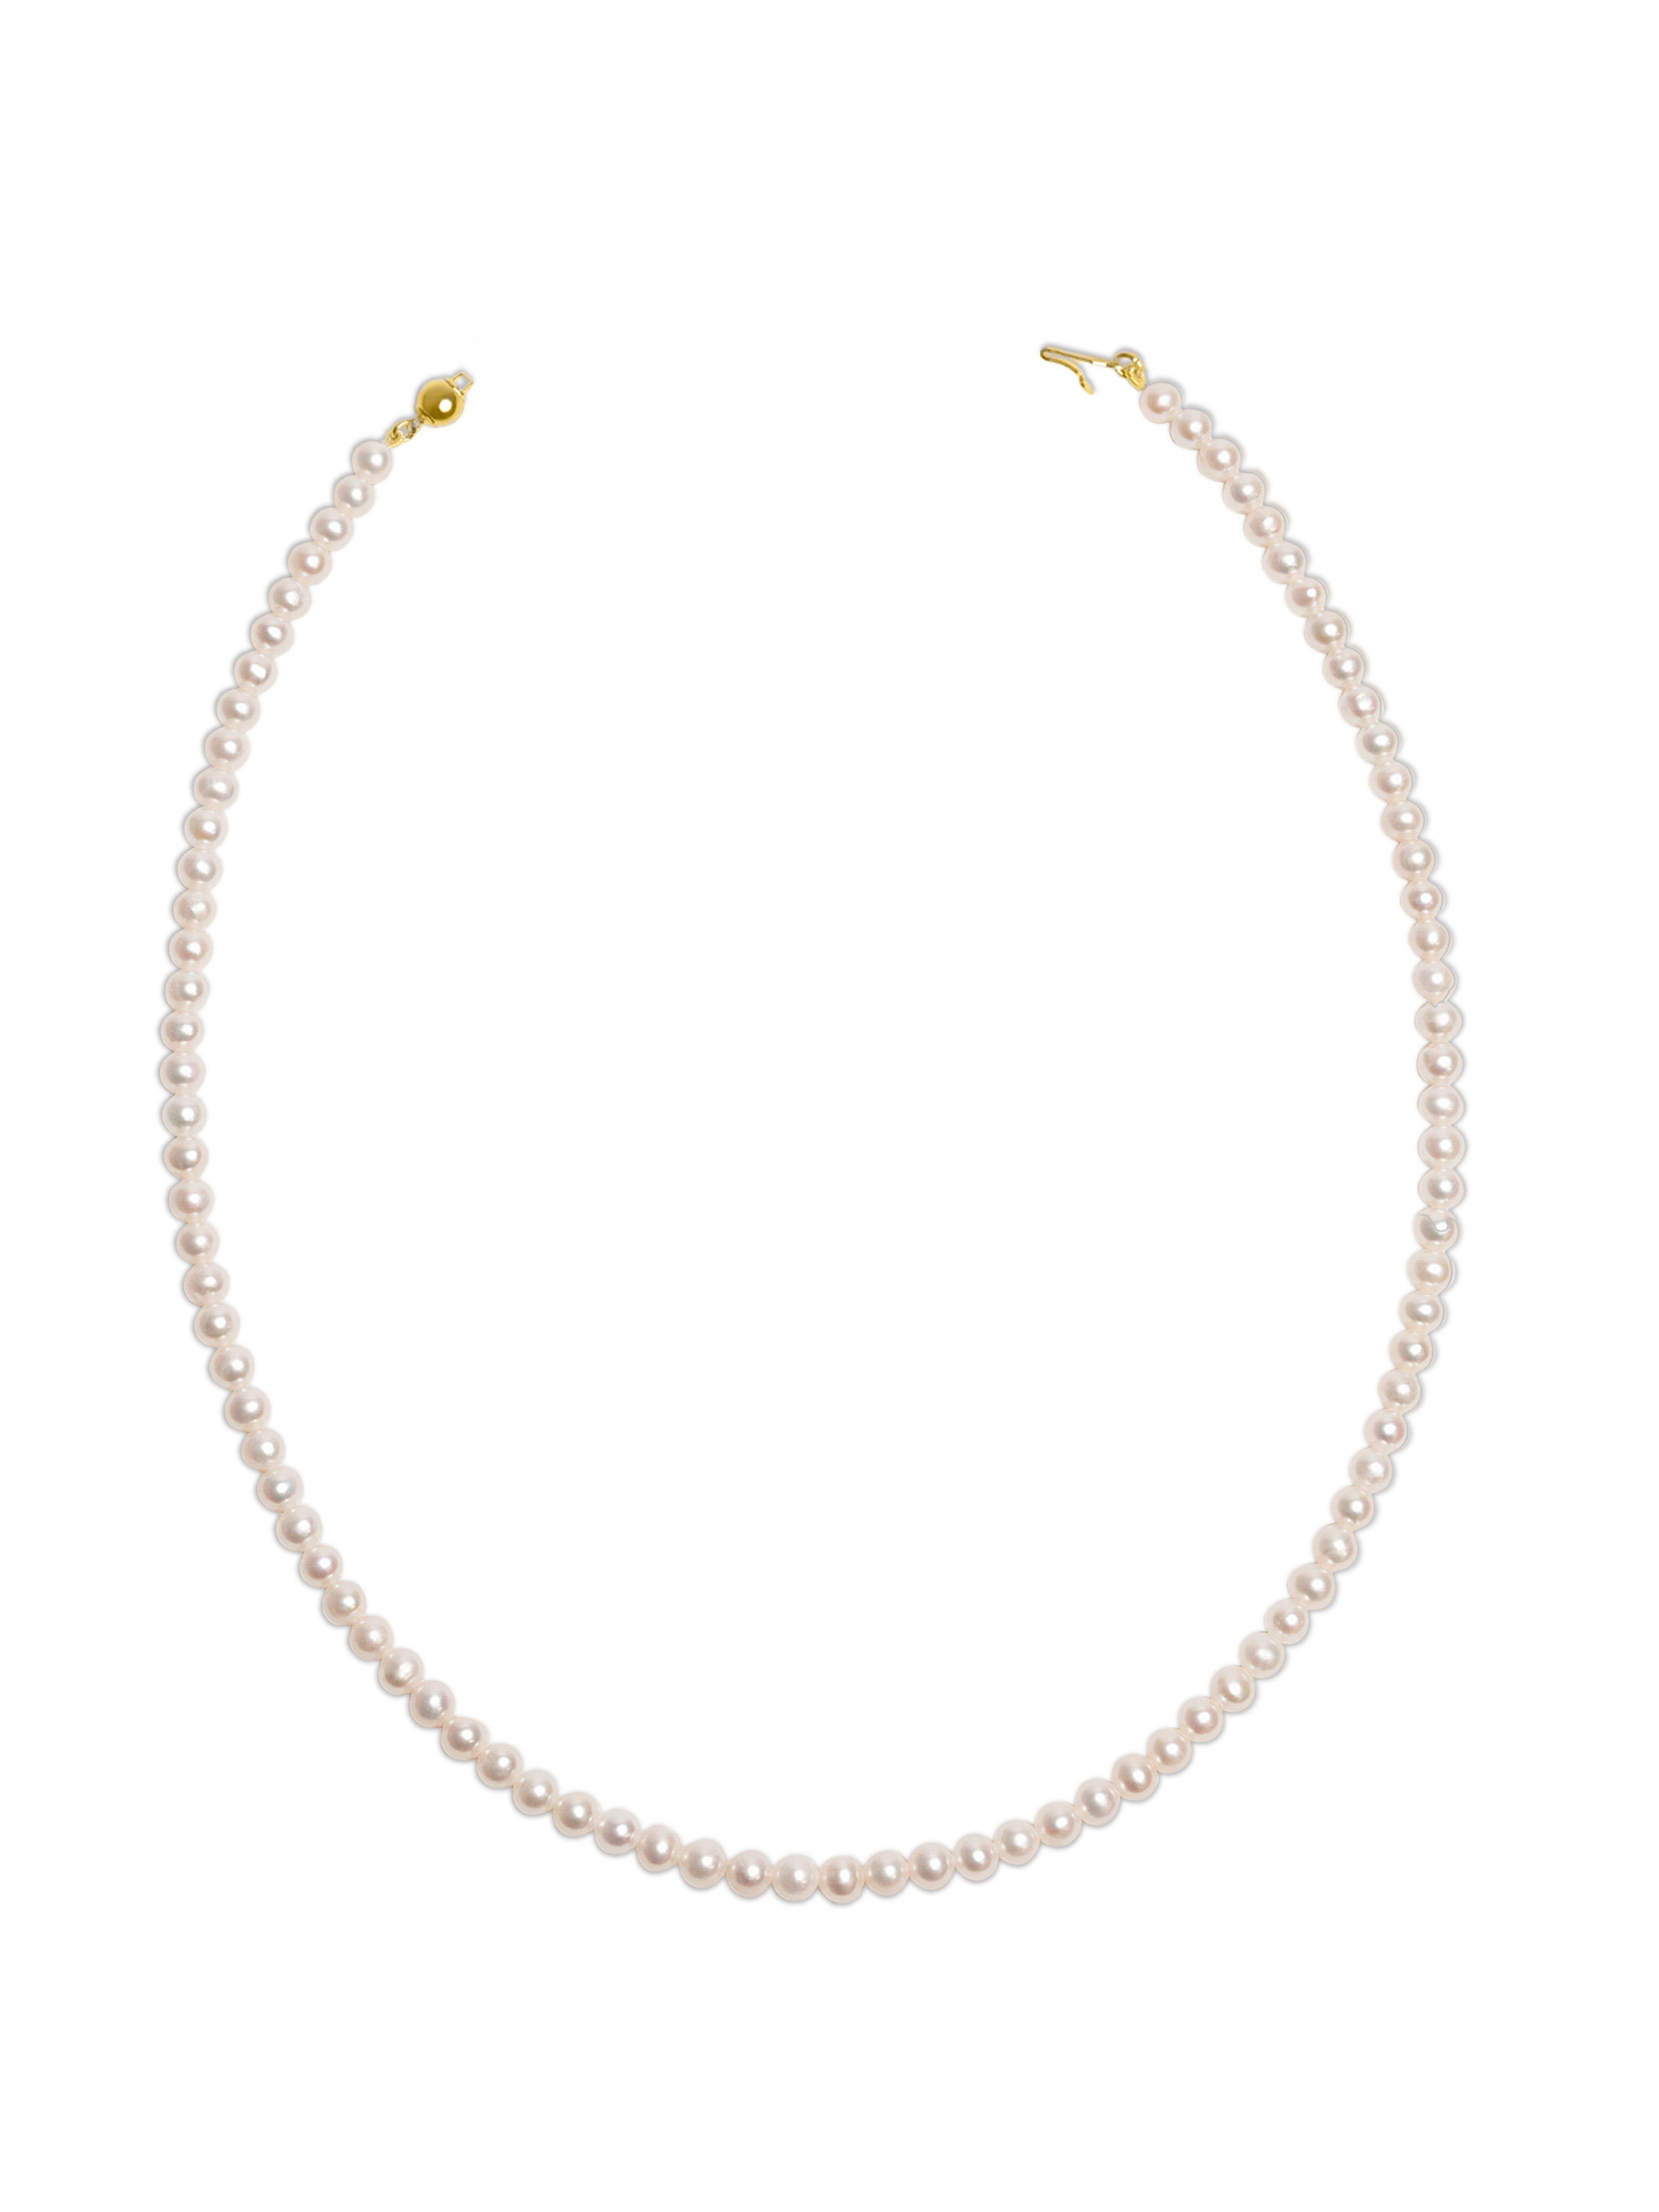 Collar de Perlas Cultivadas de Agua Dulce AAA de 4,5-5,0 mm, 60 cm de largo | Oro 18K